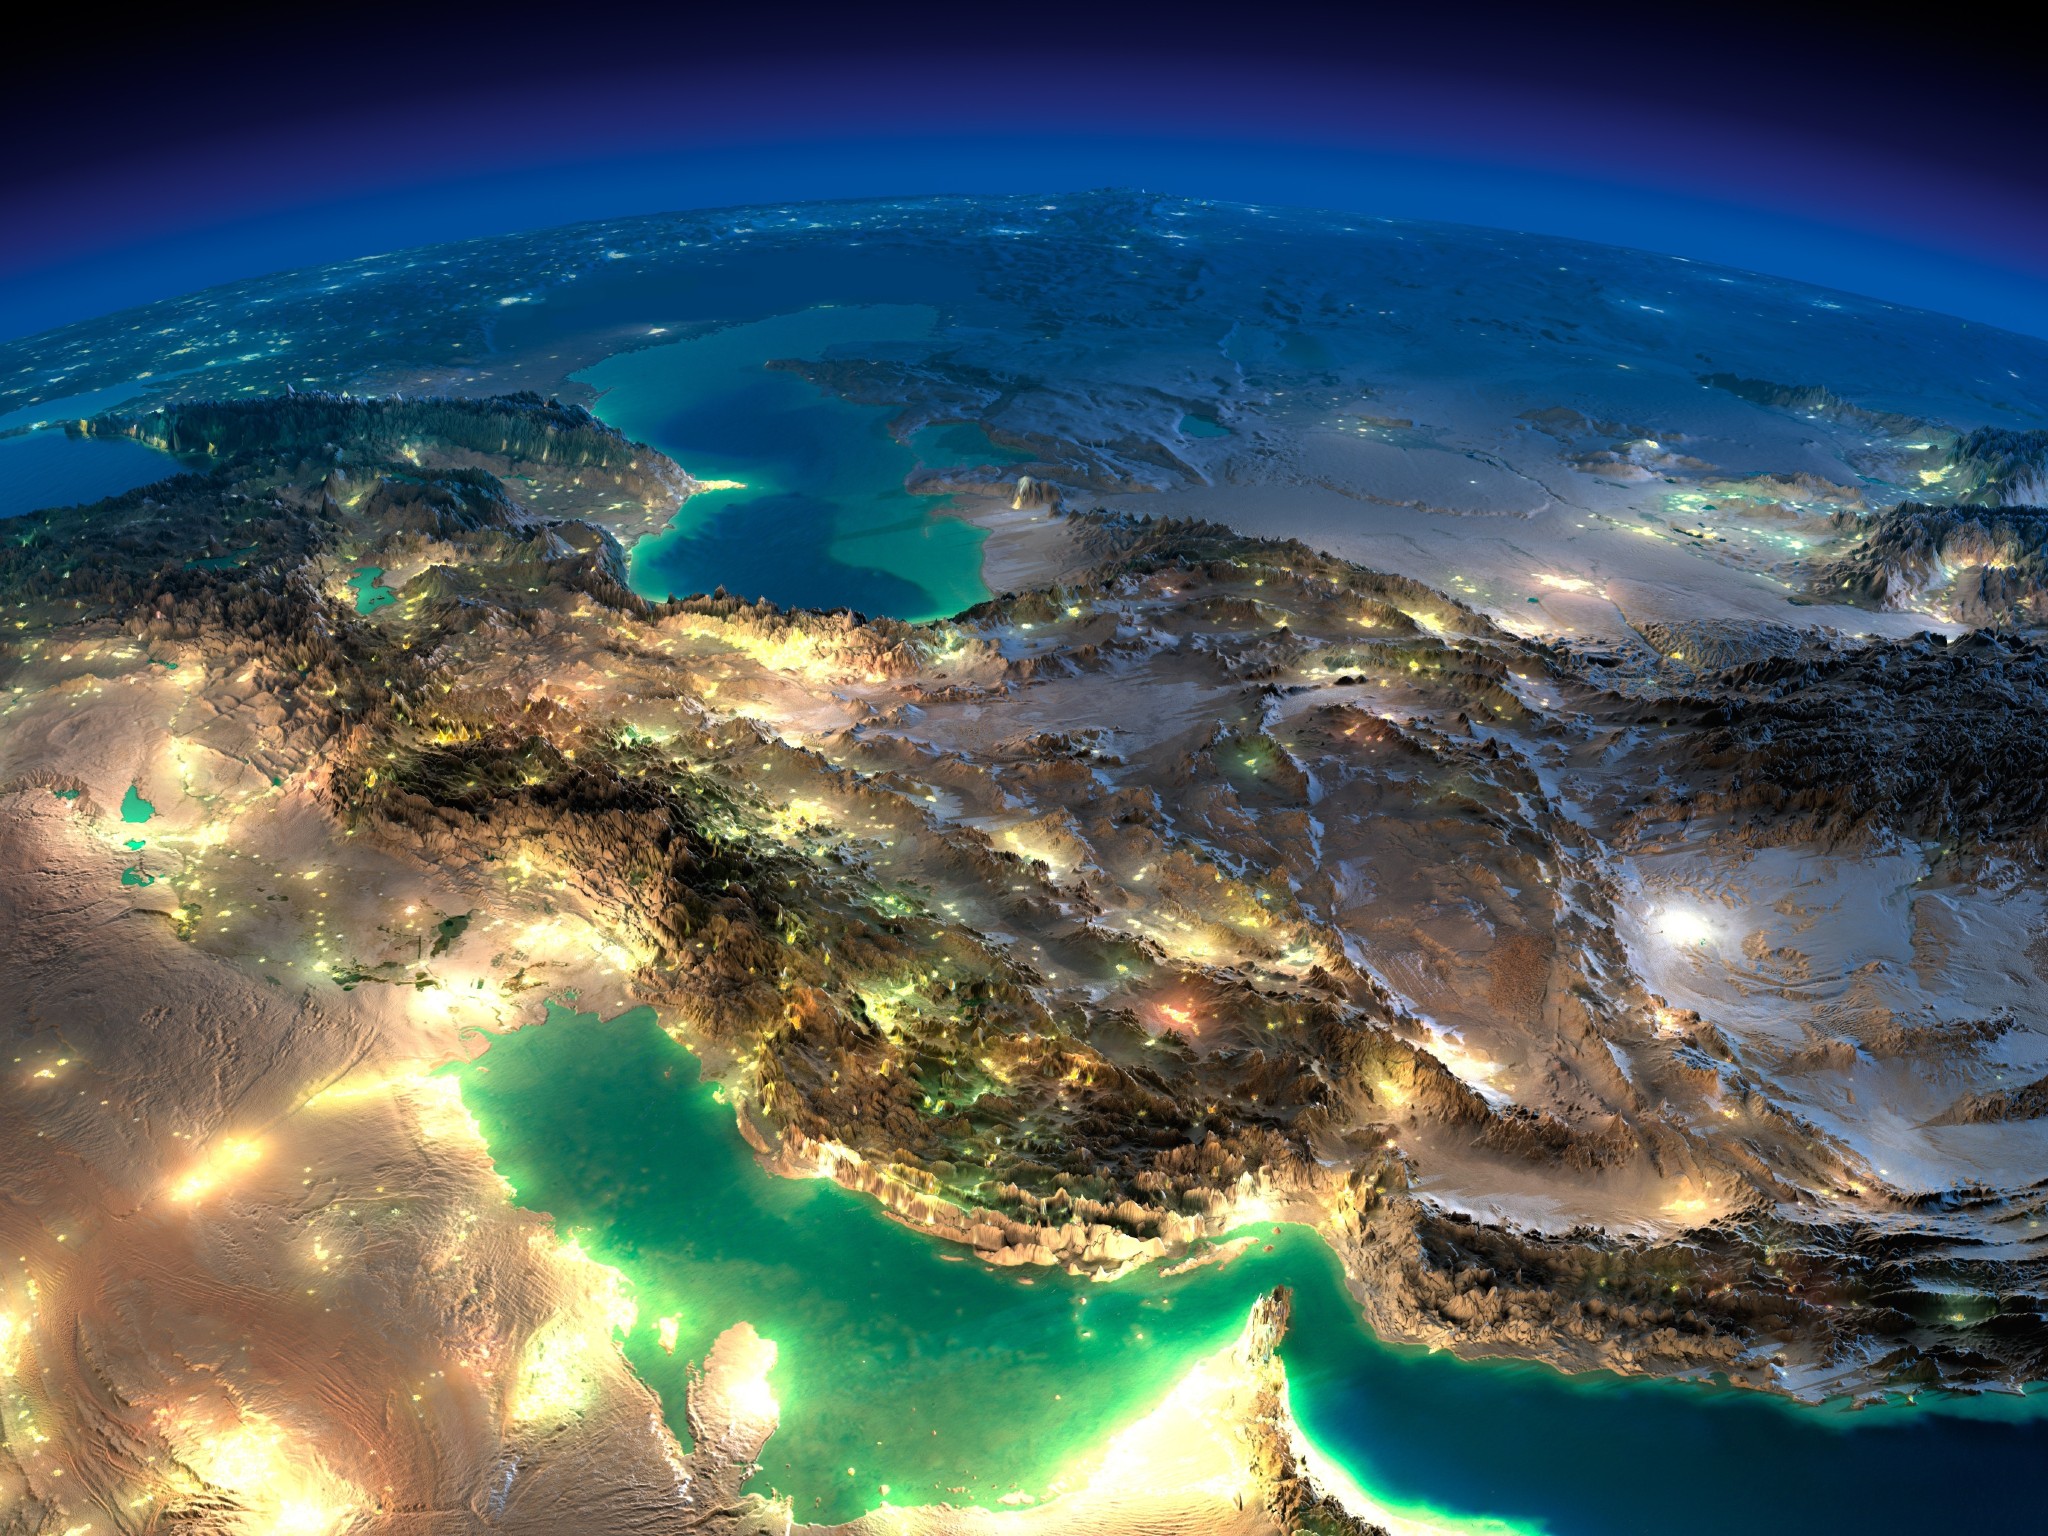 نقشه ایران ، جهان ، دنیا ، شهرها و راههای ایران با کیفیت بسیار بالا و عکس ناسا